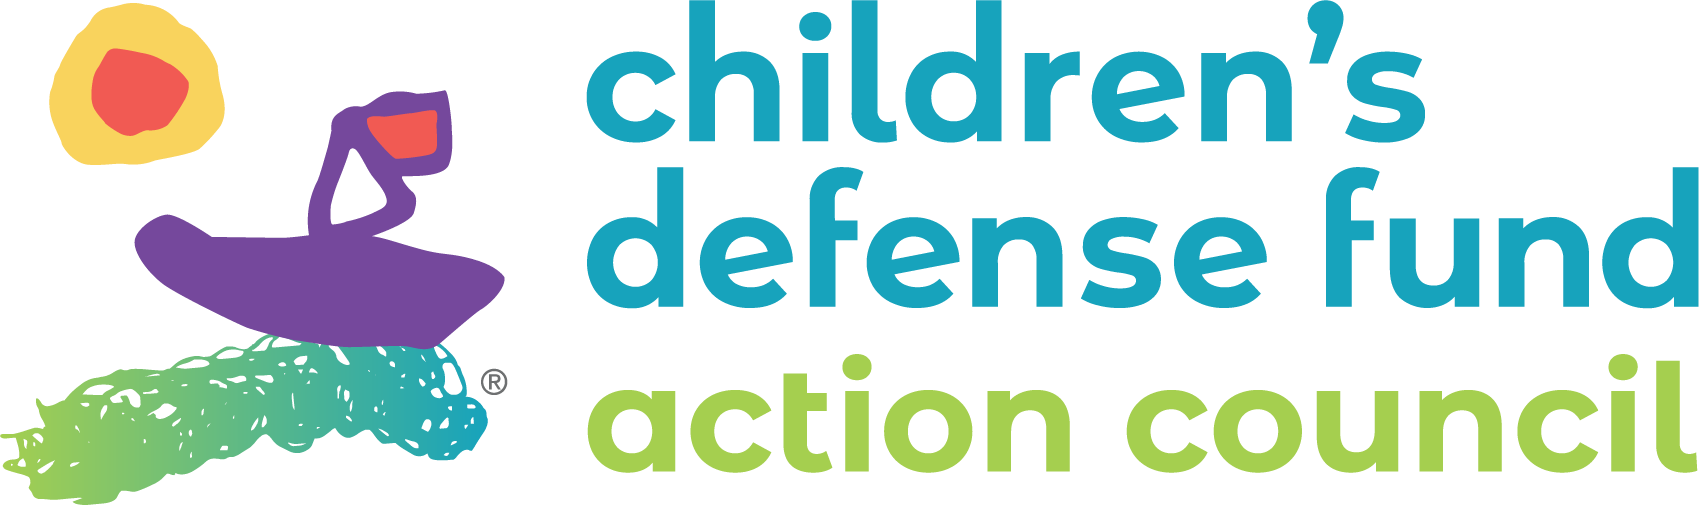 Children’s Defense Fund Action Conucil